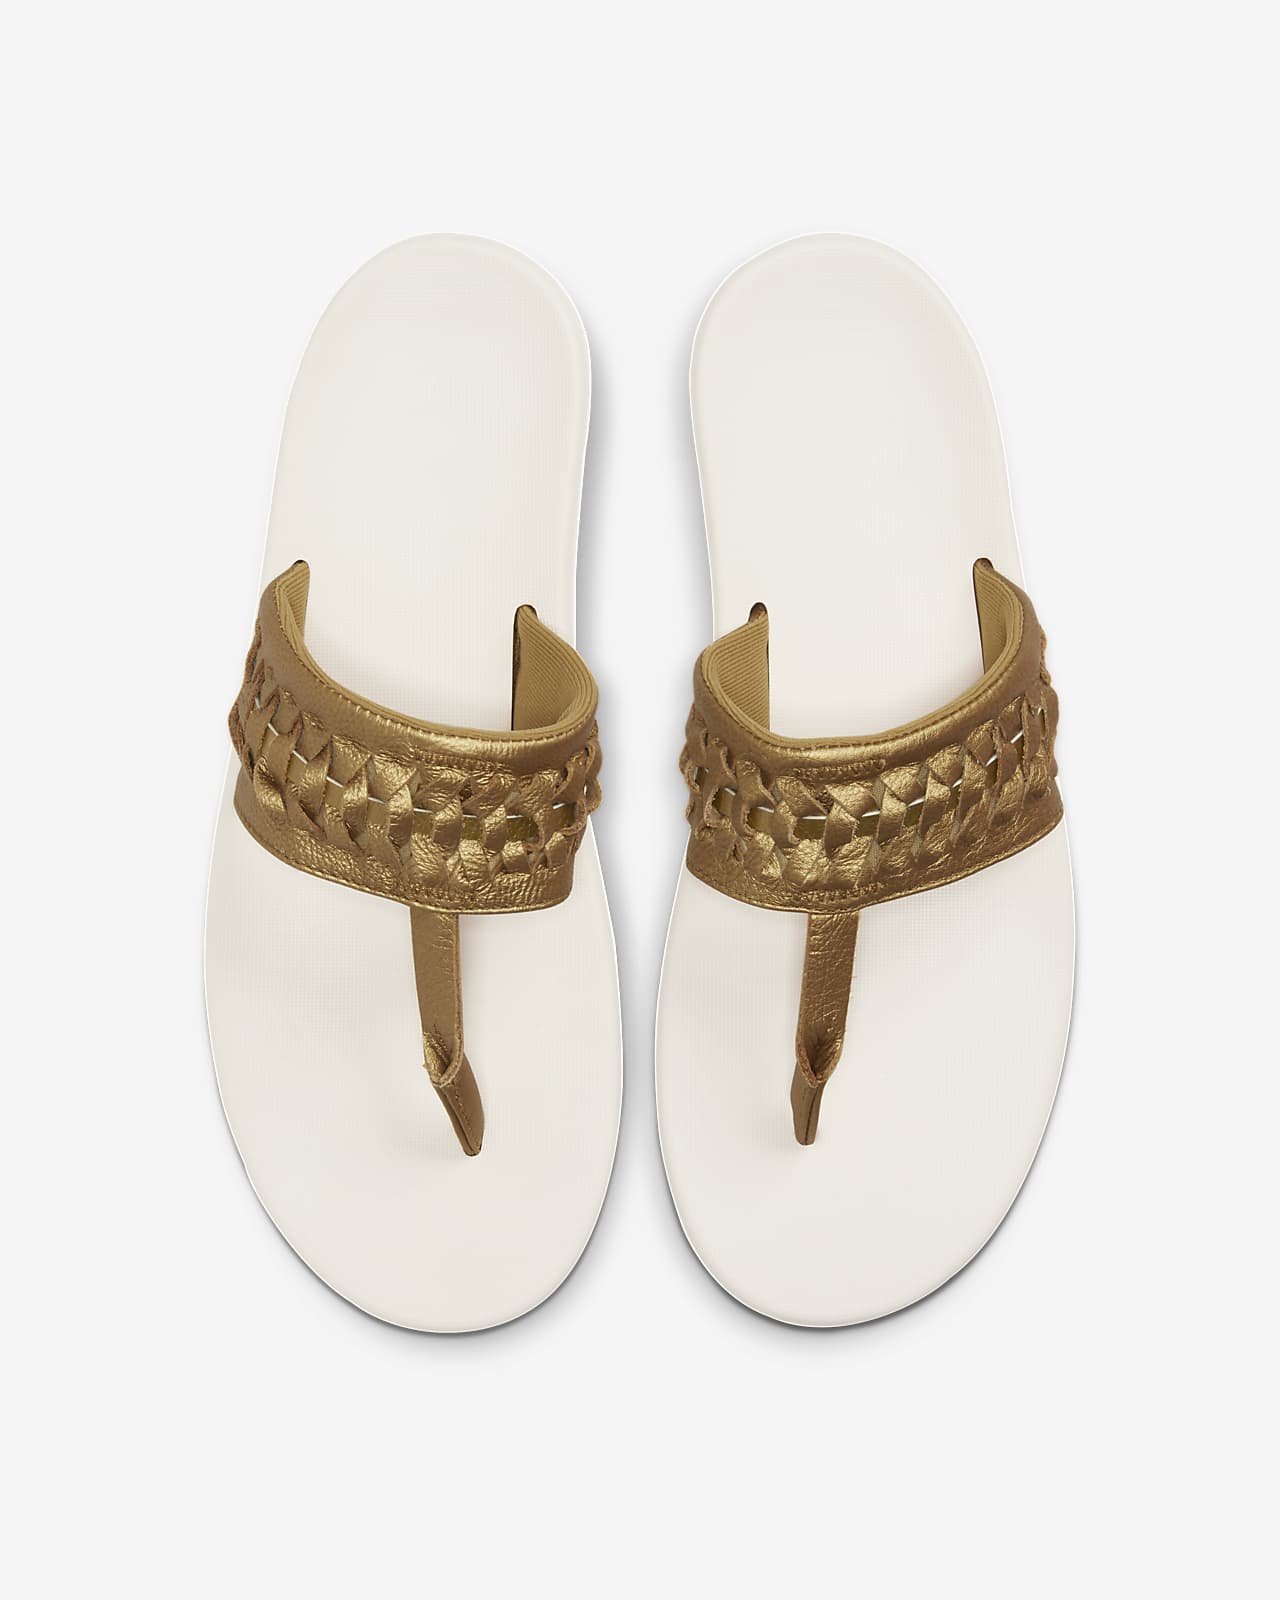 nike bella kai women's sandals